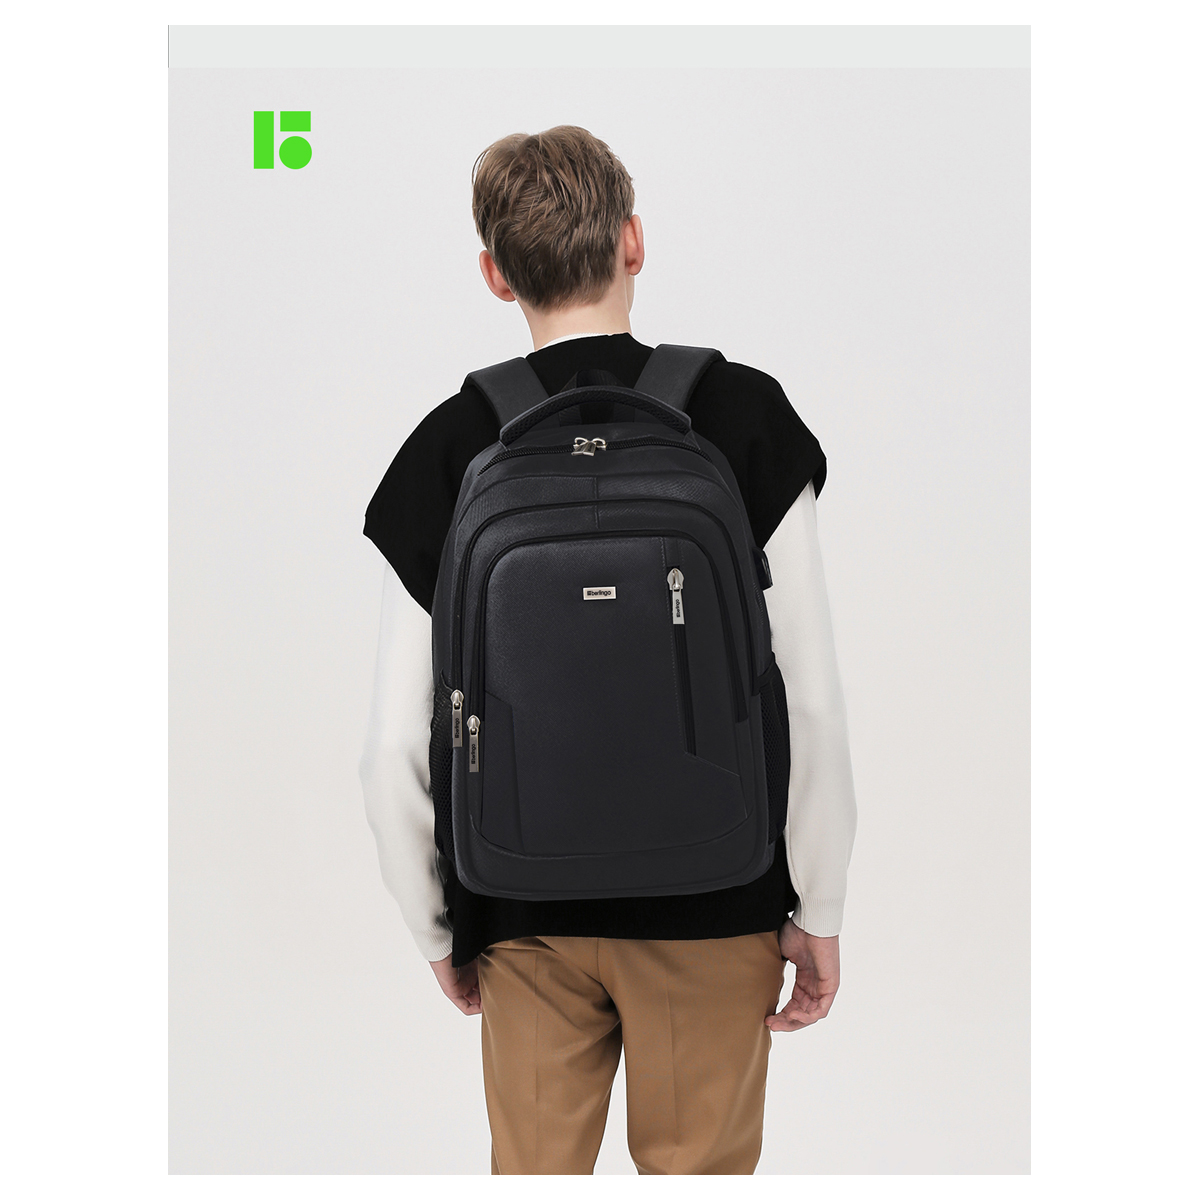 Рюкзак Berlingo City "Comfort black" 42*29*17см, 3 отделения, 3 кармана, отделение для ноутбука, USB разъем, эргономическая спинка